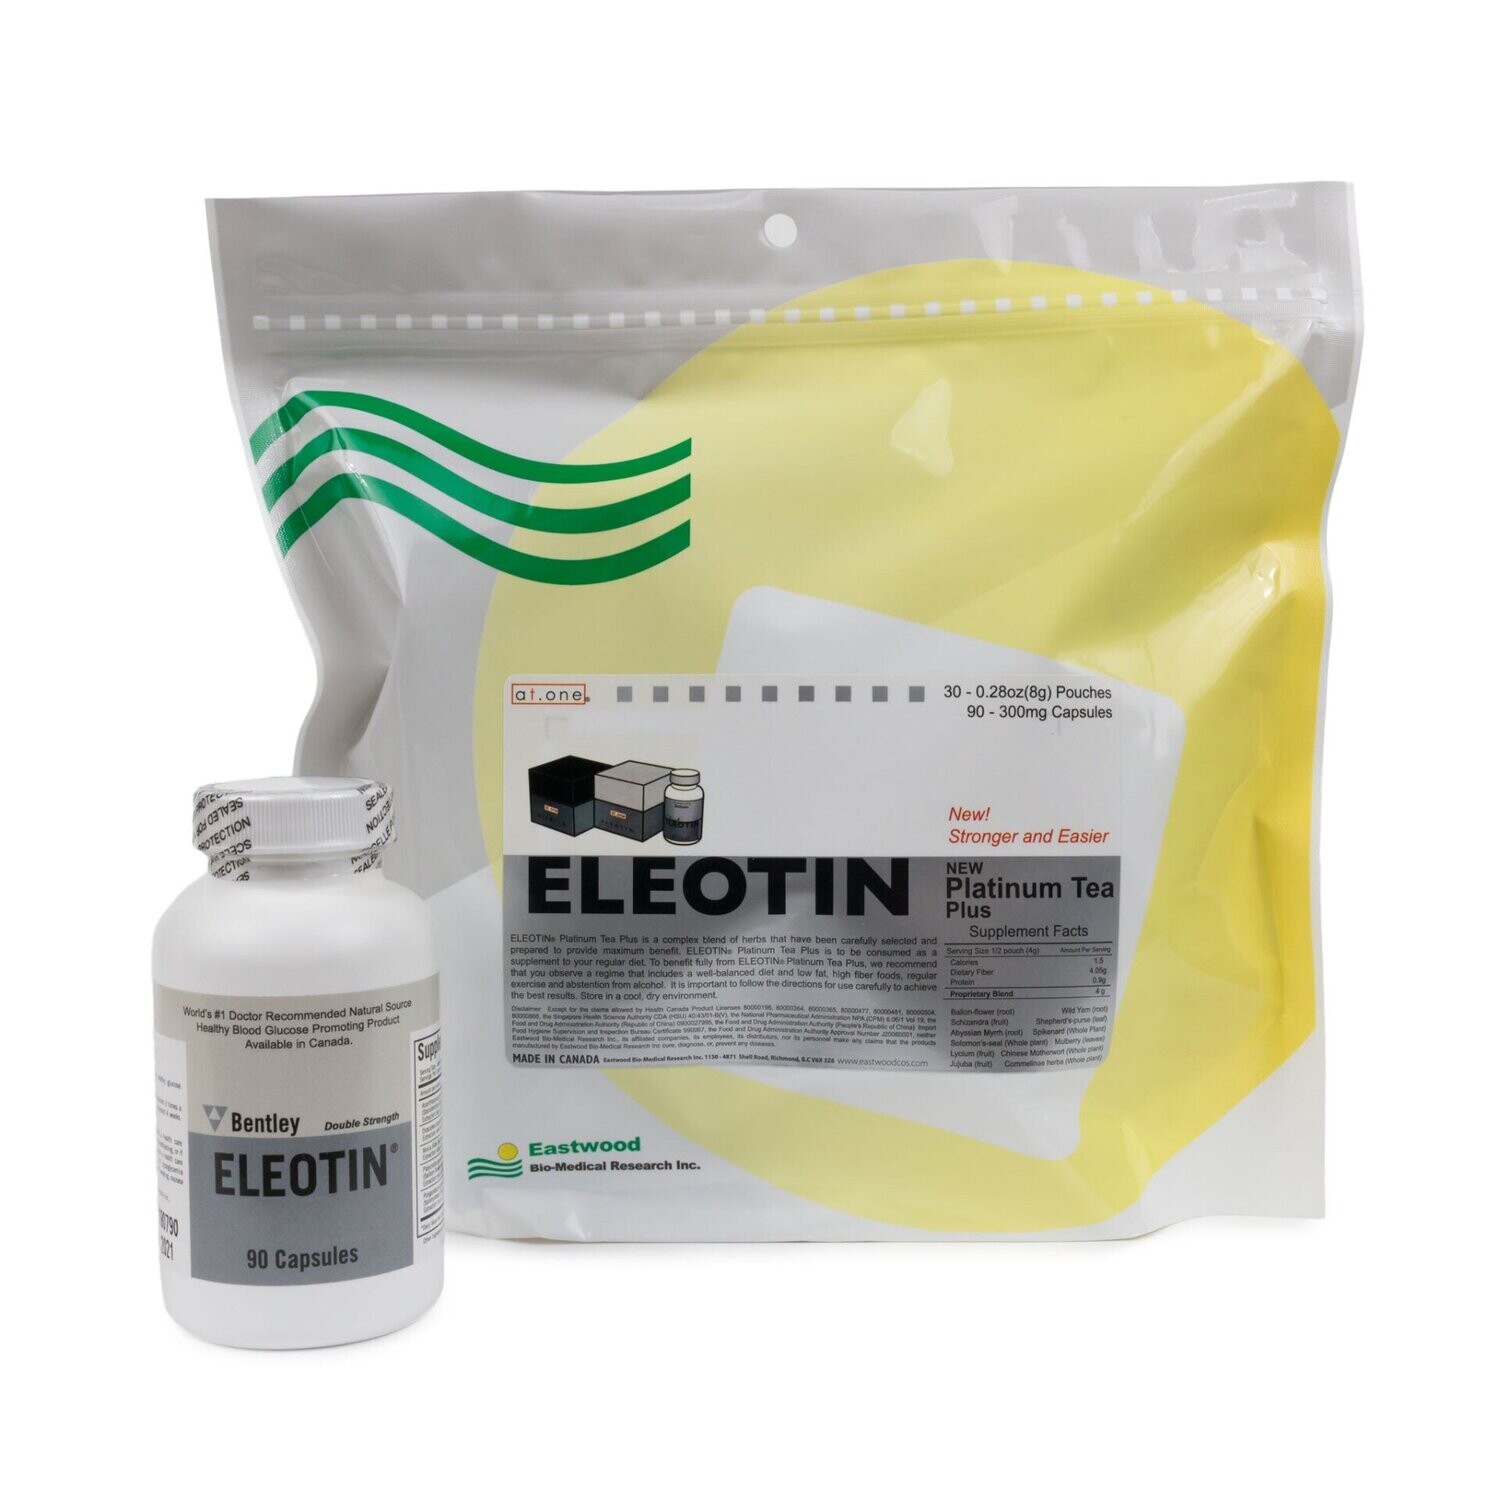 ELEOTIN Platinum Tea Plus